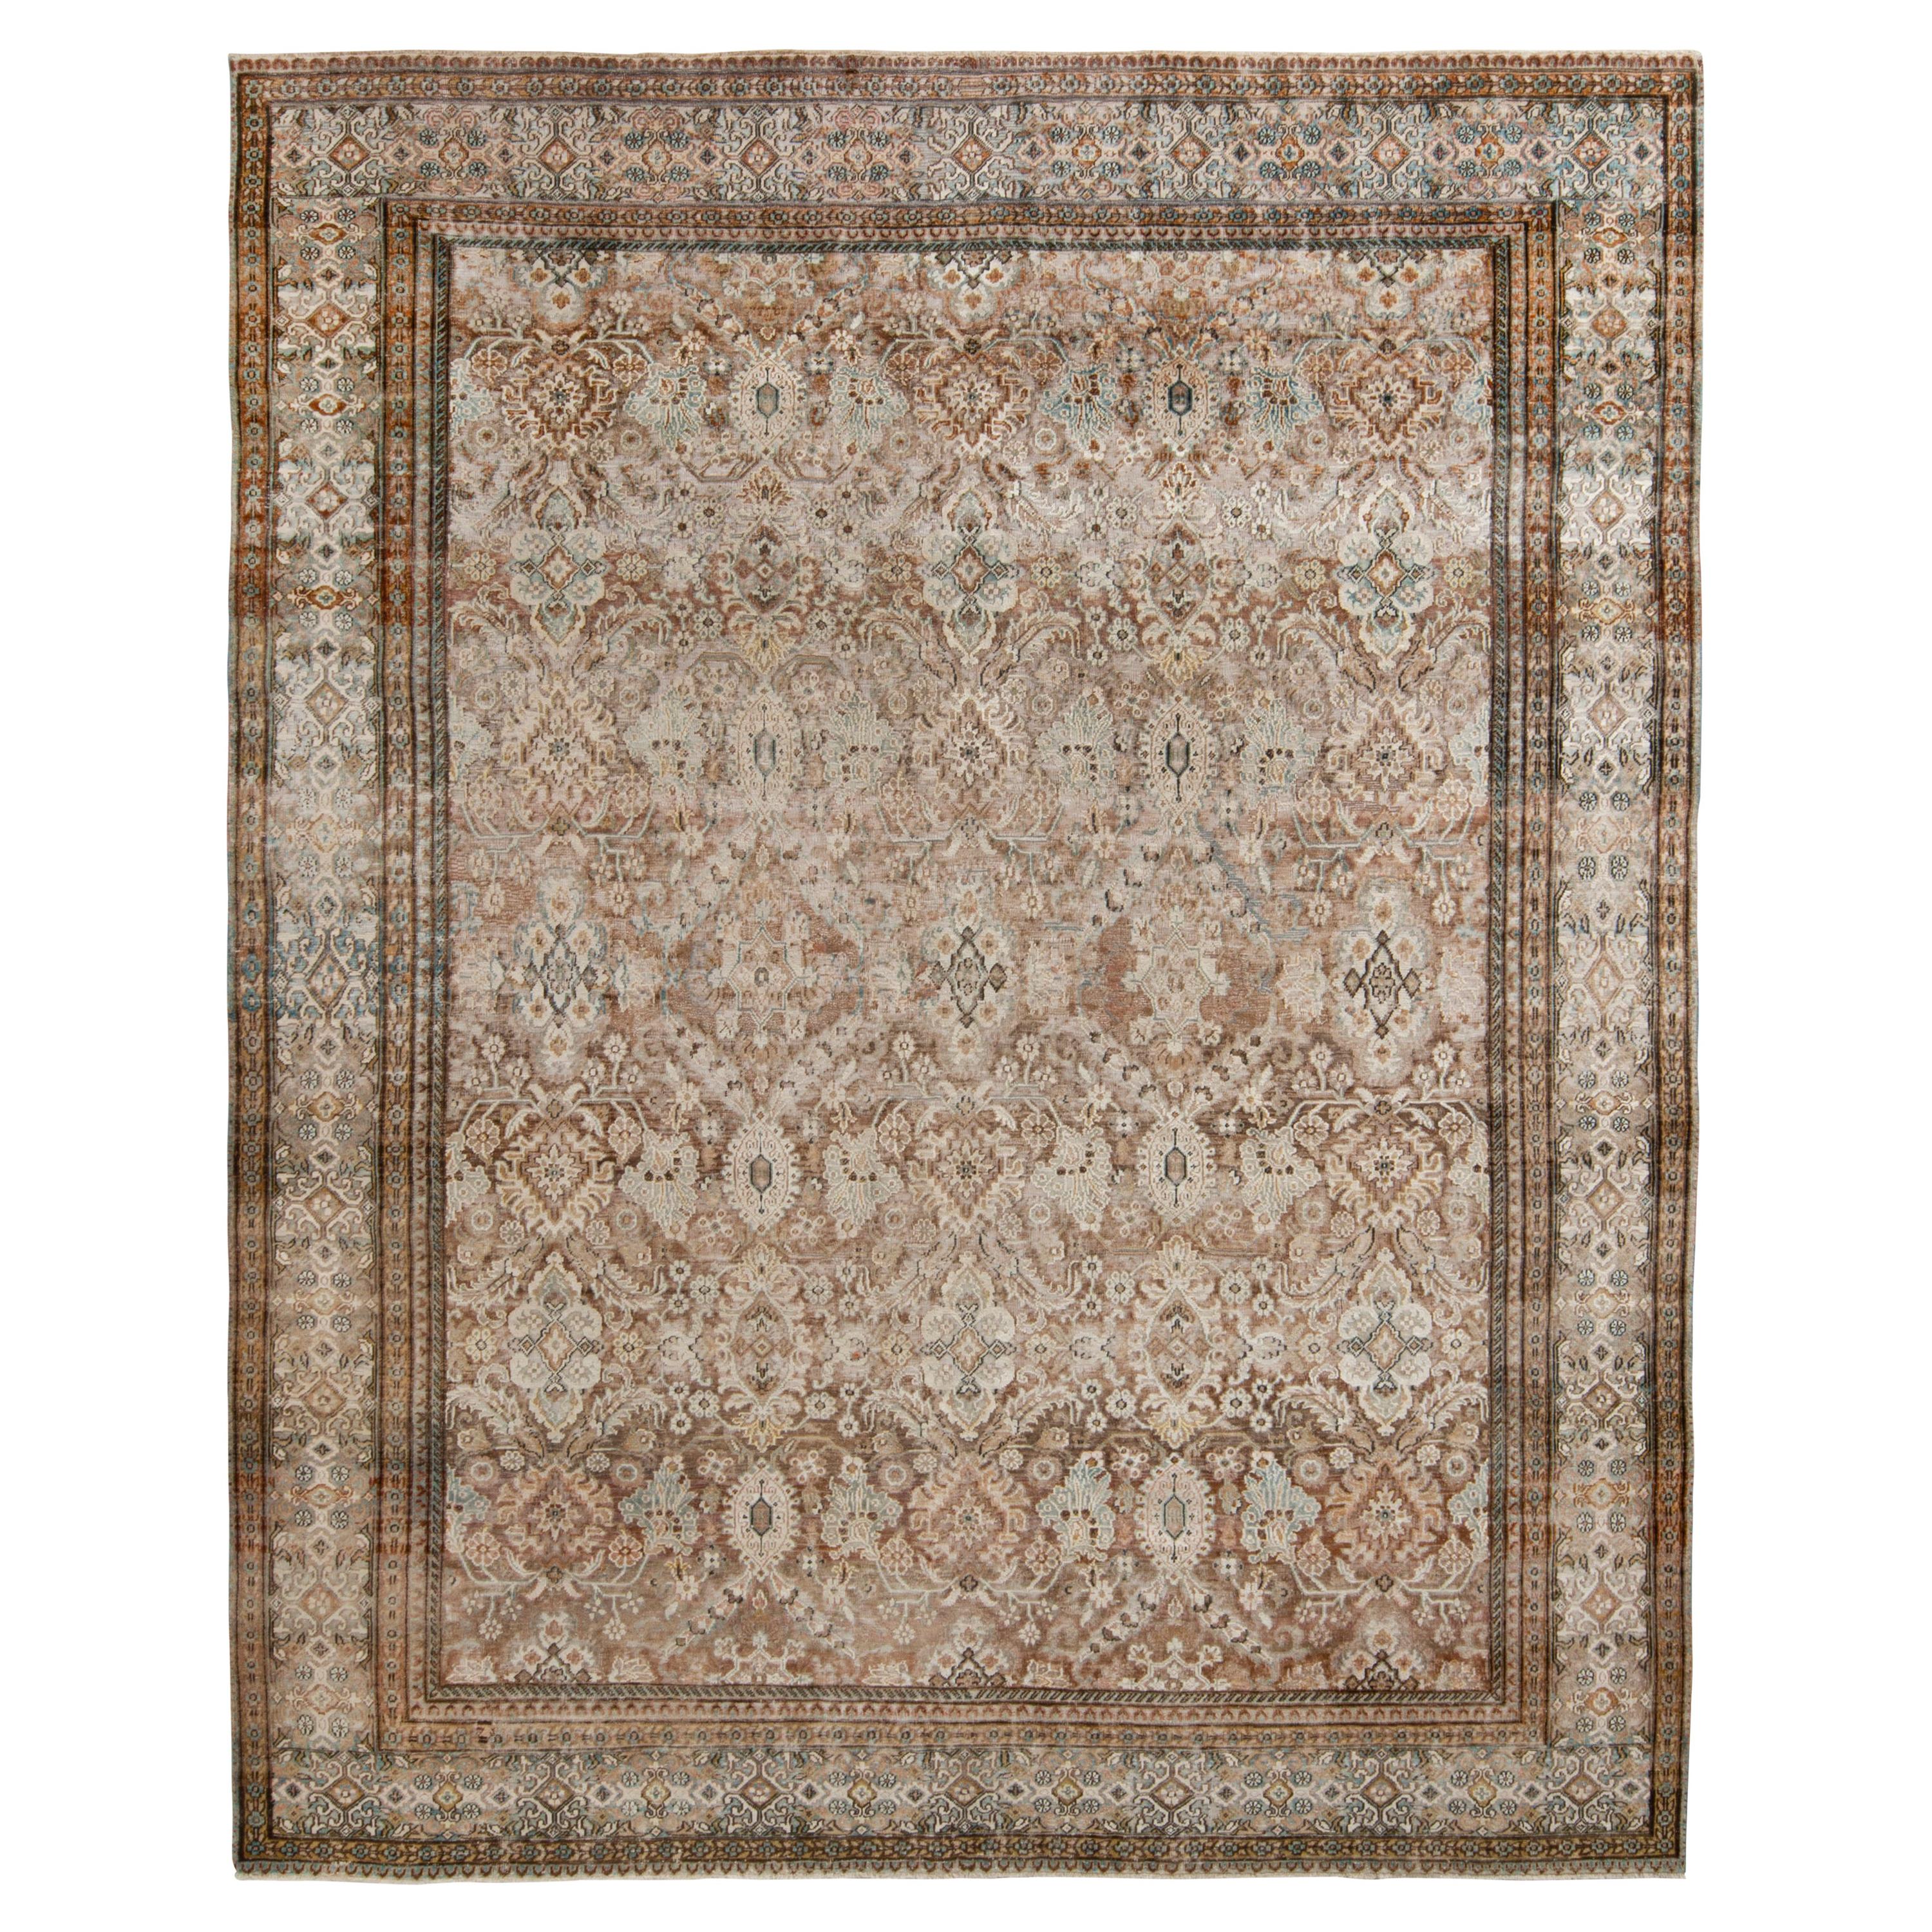 Moderner Teppich im klassischen Stil von Teppich & Kilims mit beigem und braunem Blumenmuster